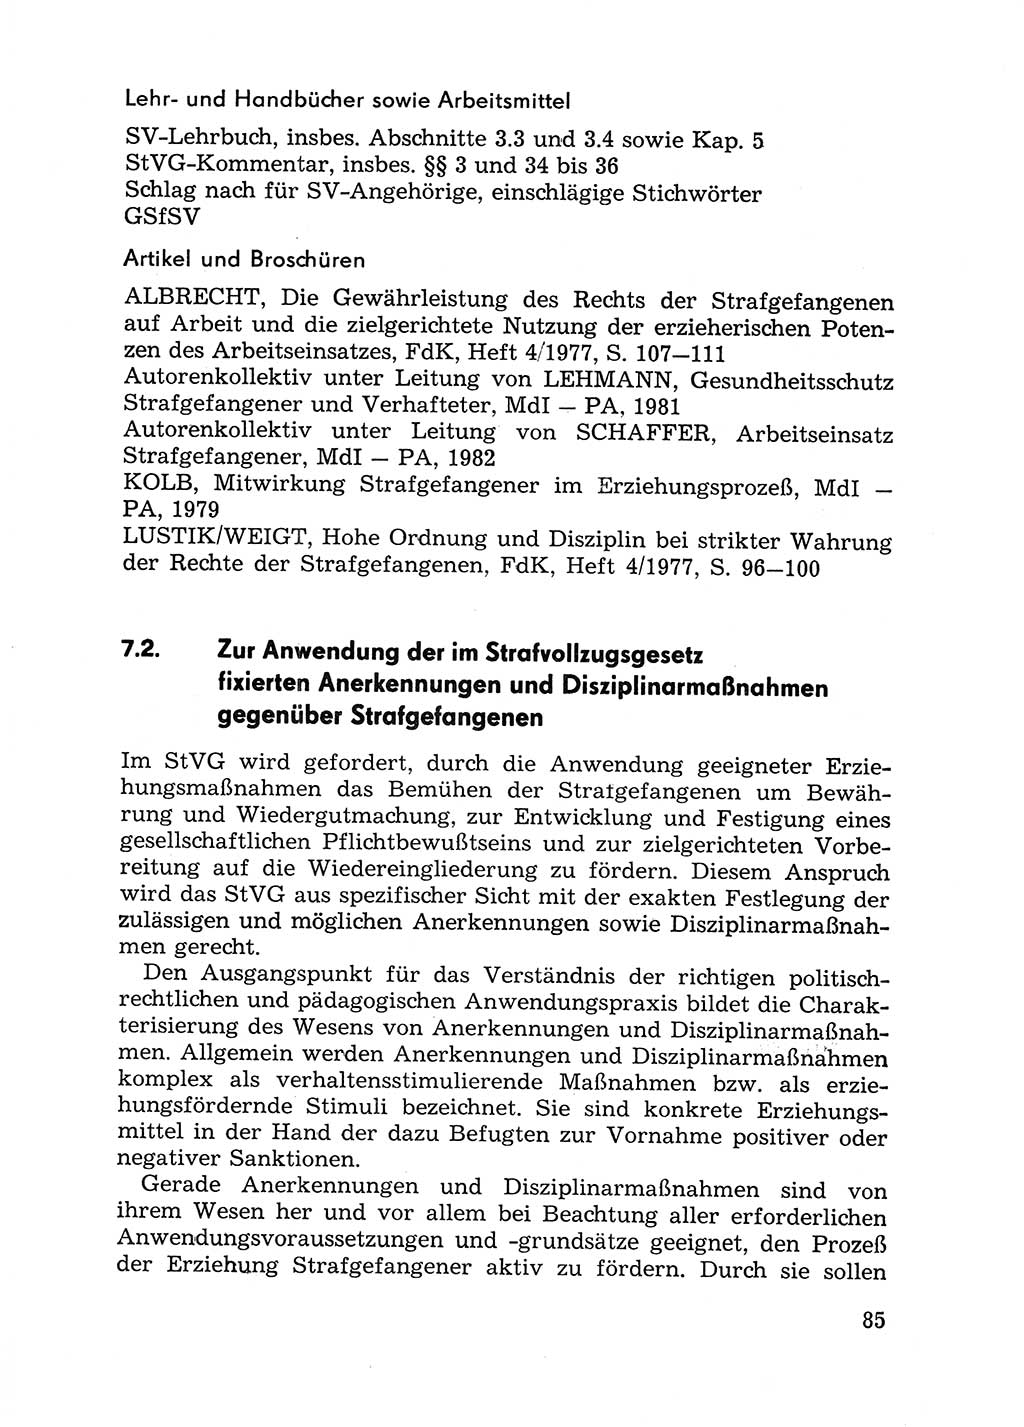 Handbuch für Betriebsangehörige, Abteilung Strafvollzug (SV) [Ministerium des Innern (MdI) Deutsche Demokratische Republik (DDR)] 1981, Seite 85 (Hb. BA Abt. SV MdI DDR 1981, S. 85)